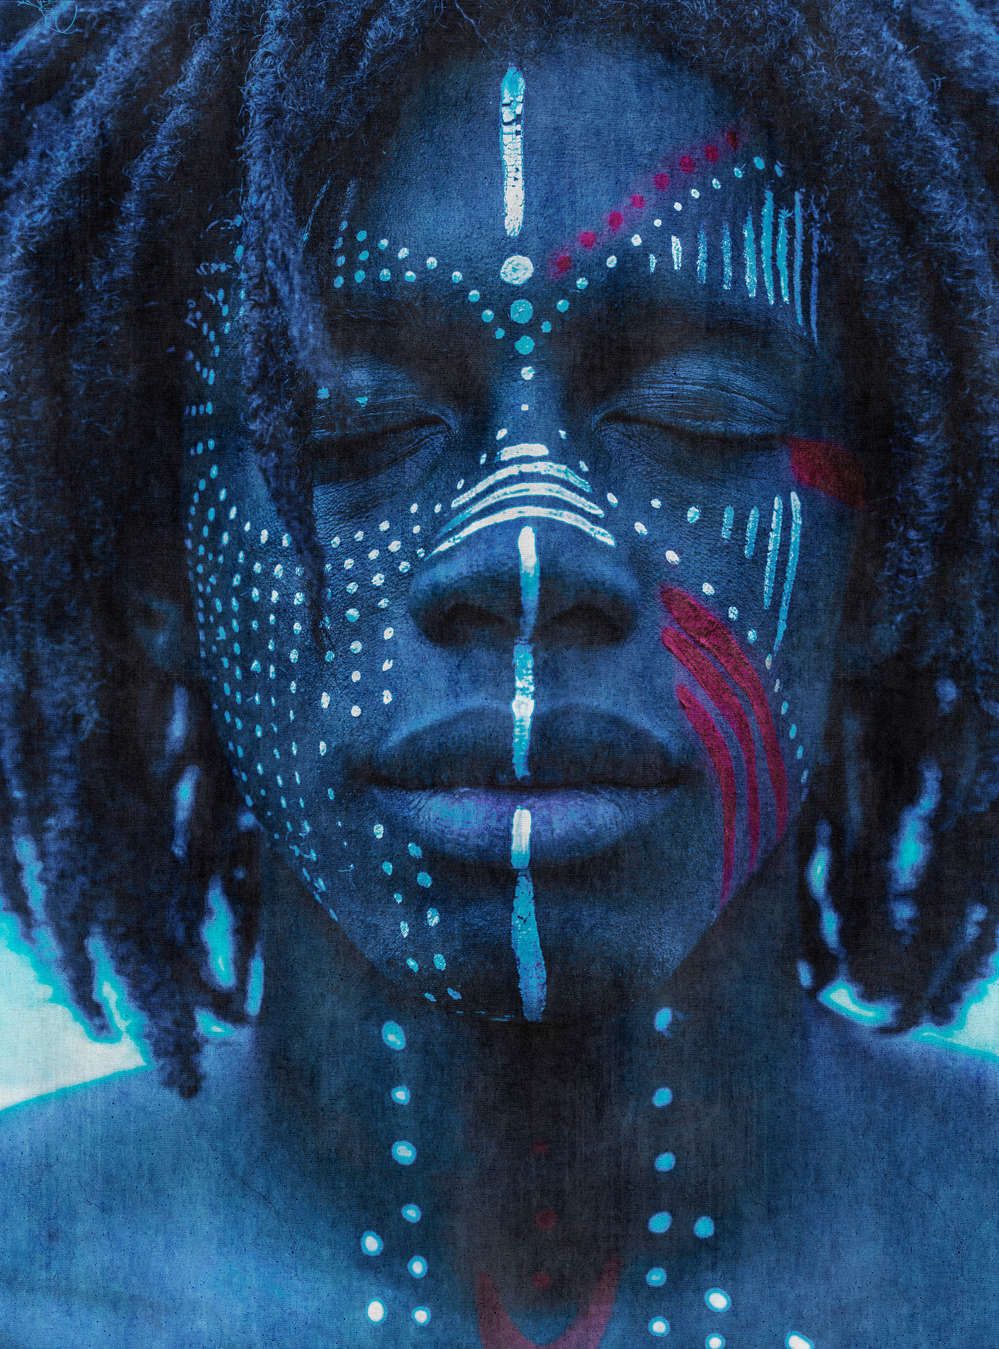             Fotomural »mikala« - Retrato africano azul con estructura de tapiz - Tela no tejida lisa, ligeramente nacarada y brillante
        